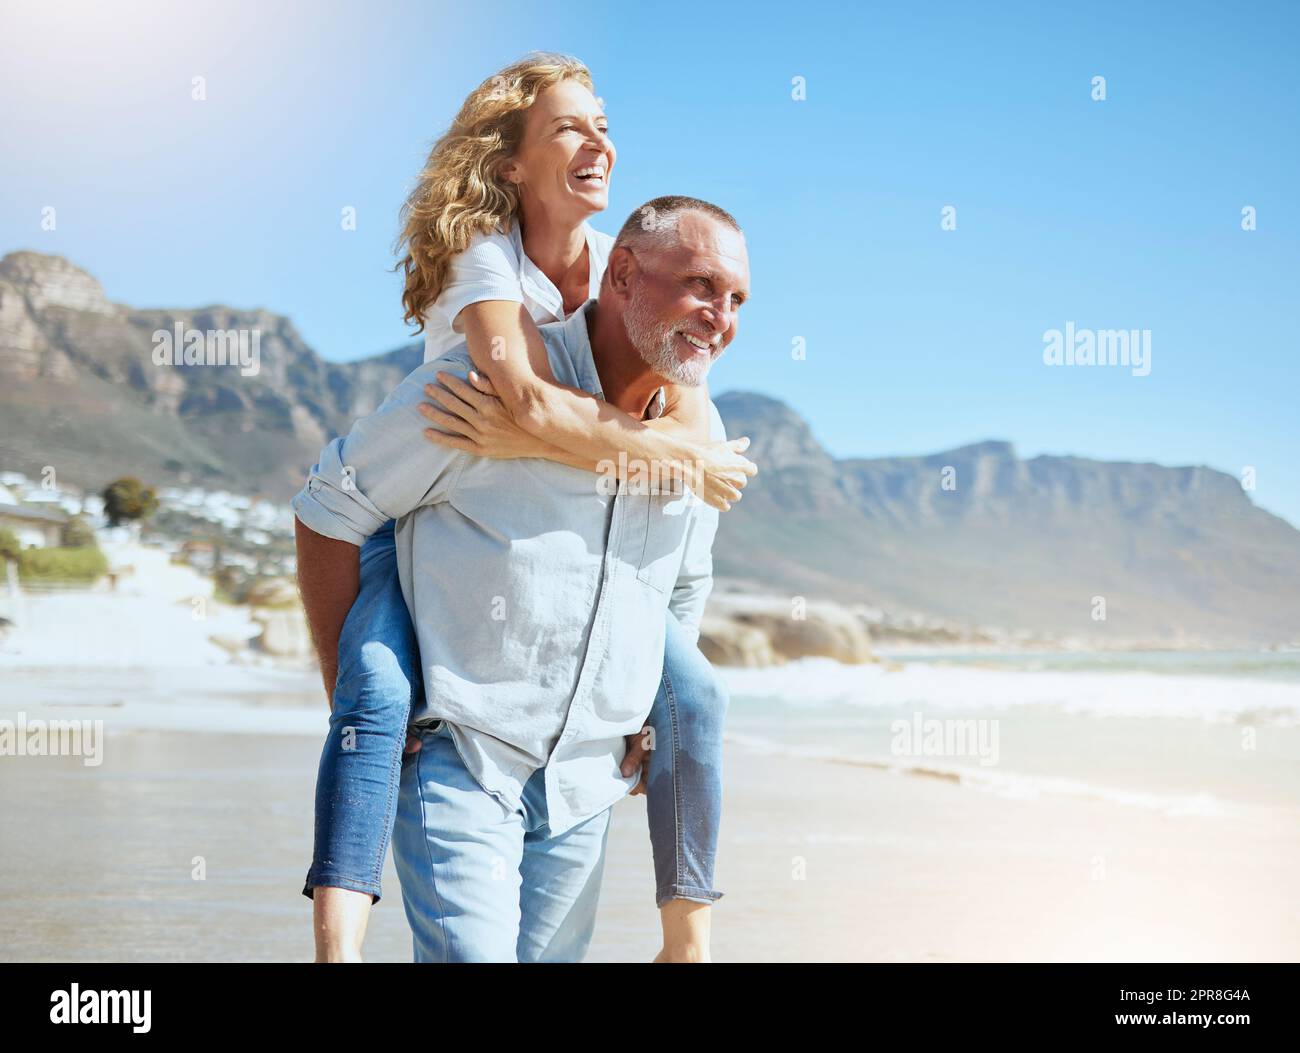 Glückliches, reifes Paar, das den Urlaub am Strand genießt. Aktiver älterer Ehemann, der seine Frau im Huckepack mitnimmt und dabei einen sonnigen Tag im Freien genießt. Energiegeladener Mann und Frau, die im Urlaub Spaß haben Stockfoto